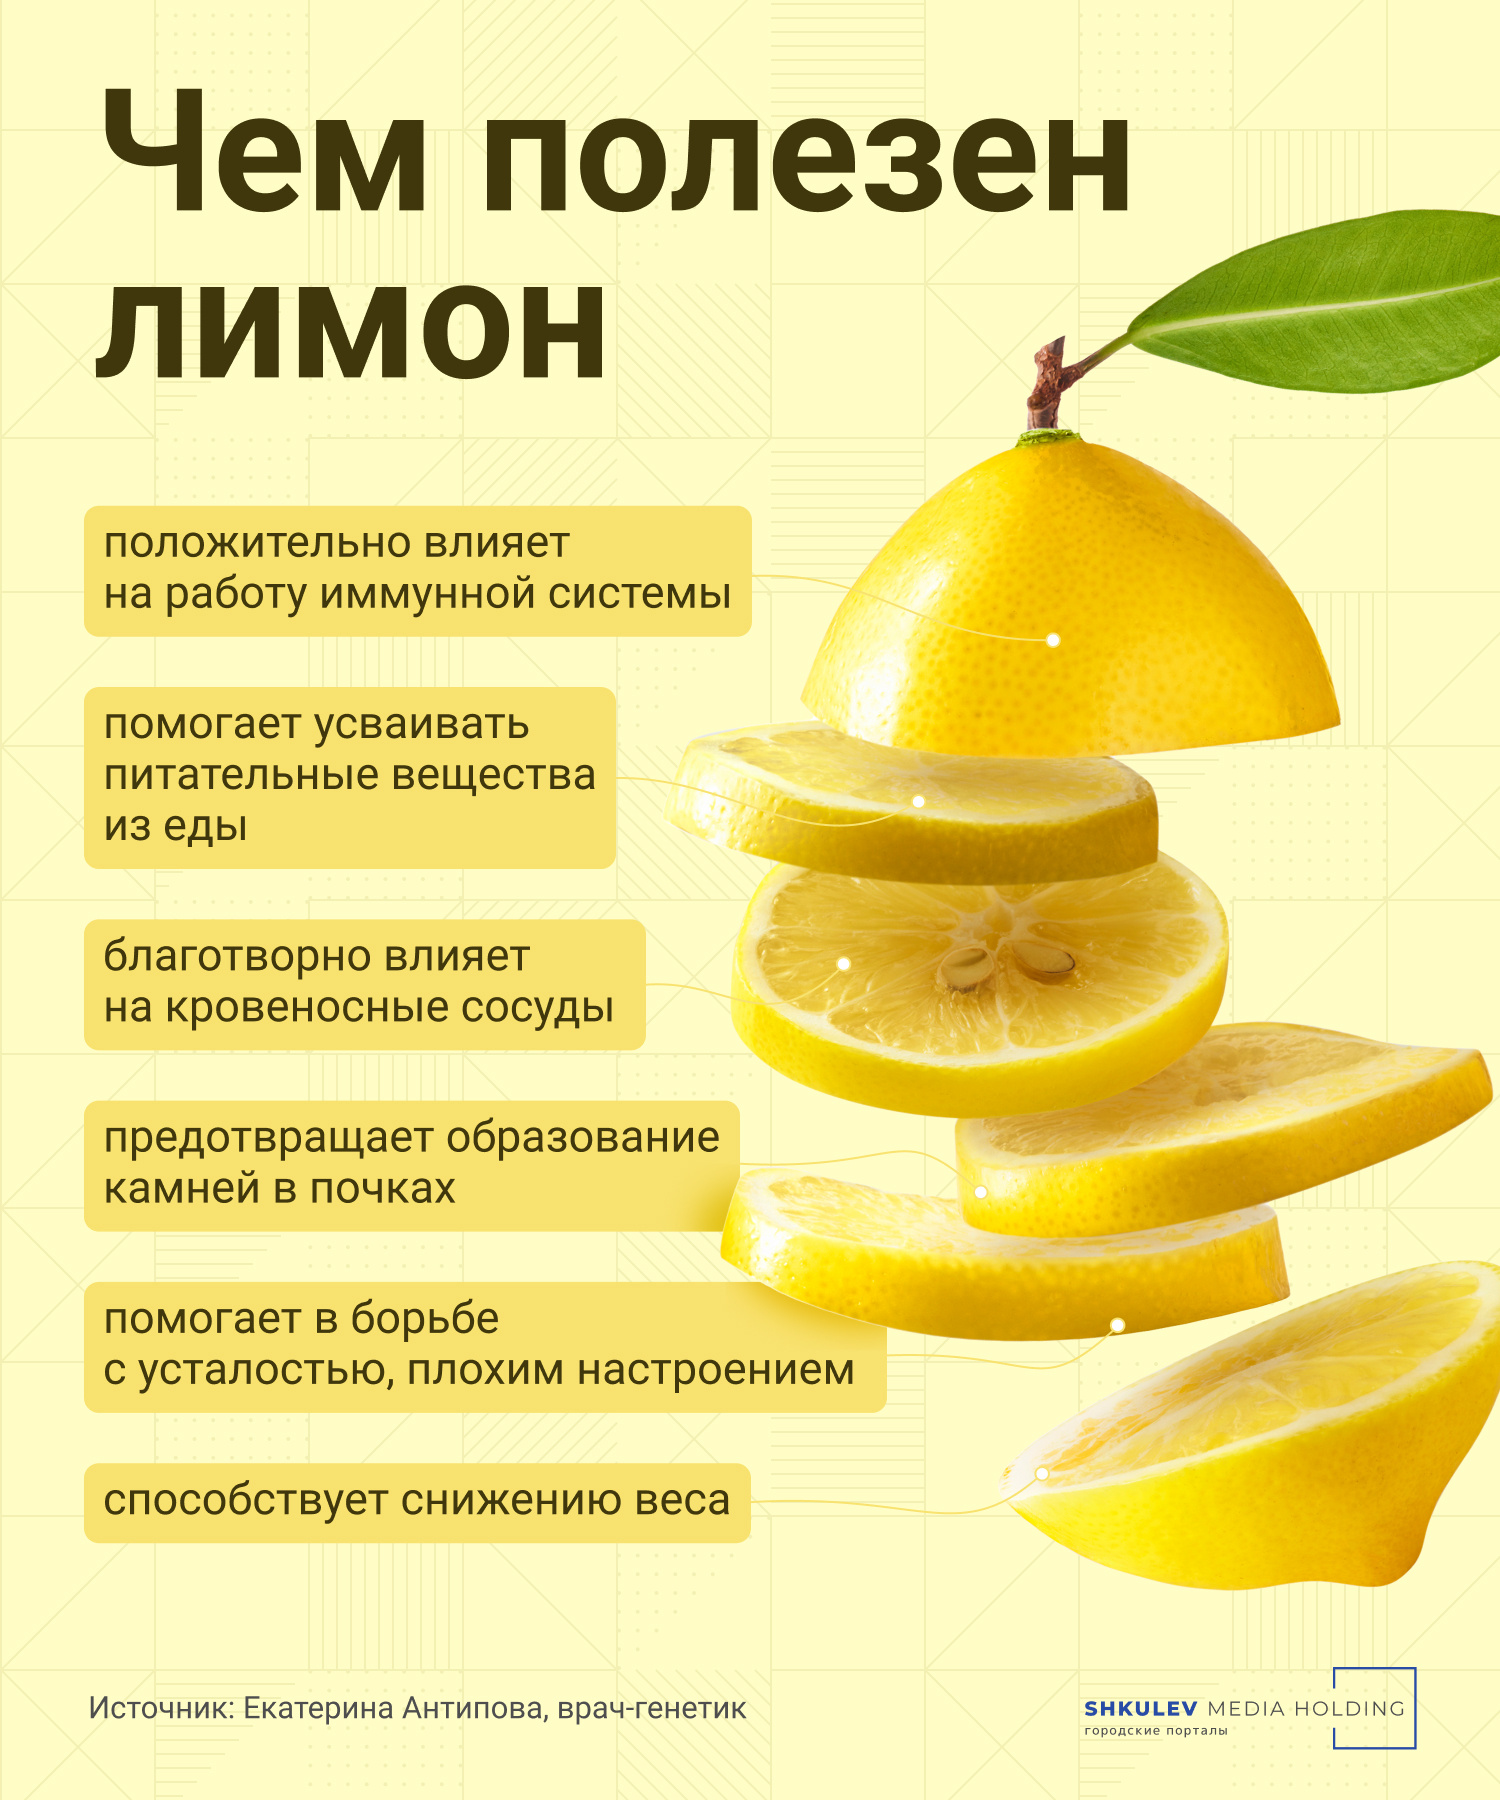 Citronová voda